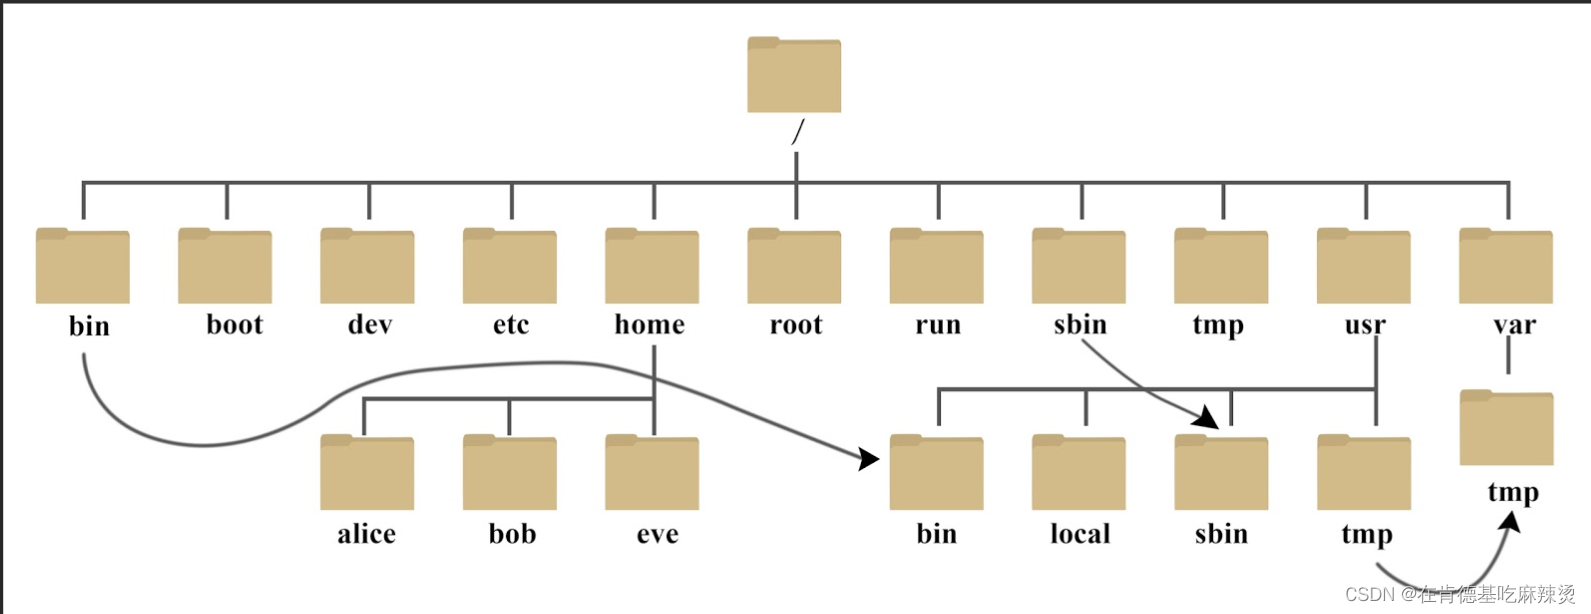 【数据结构之树】——什么是树，树的特点，树的相关概念和表示方法以及在实际的应用。